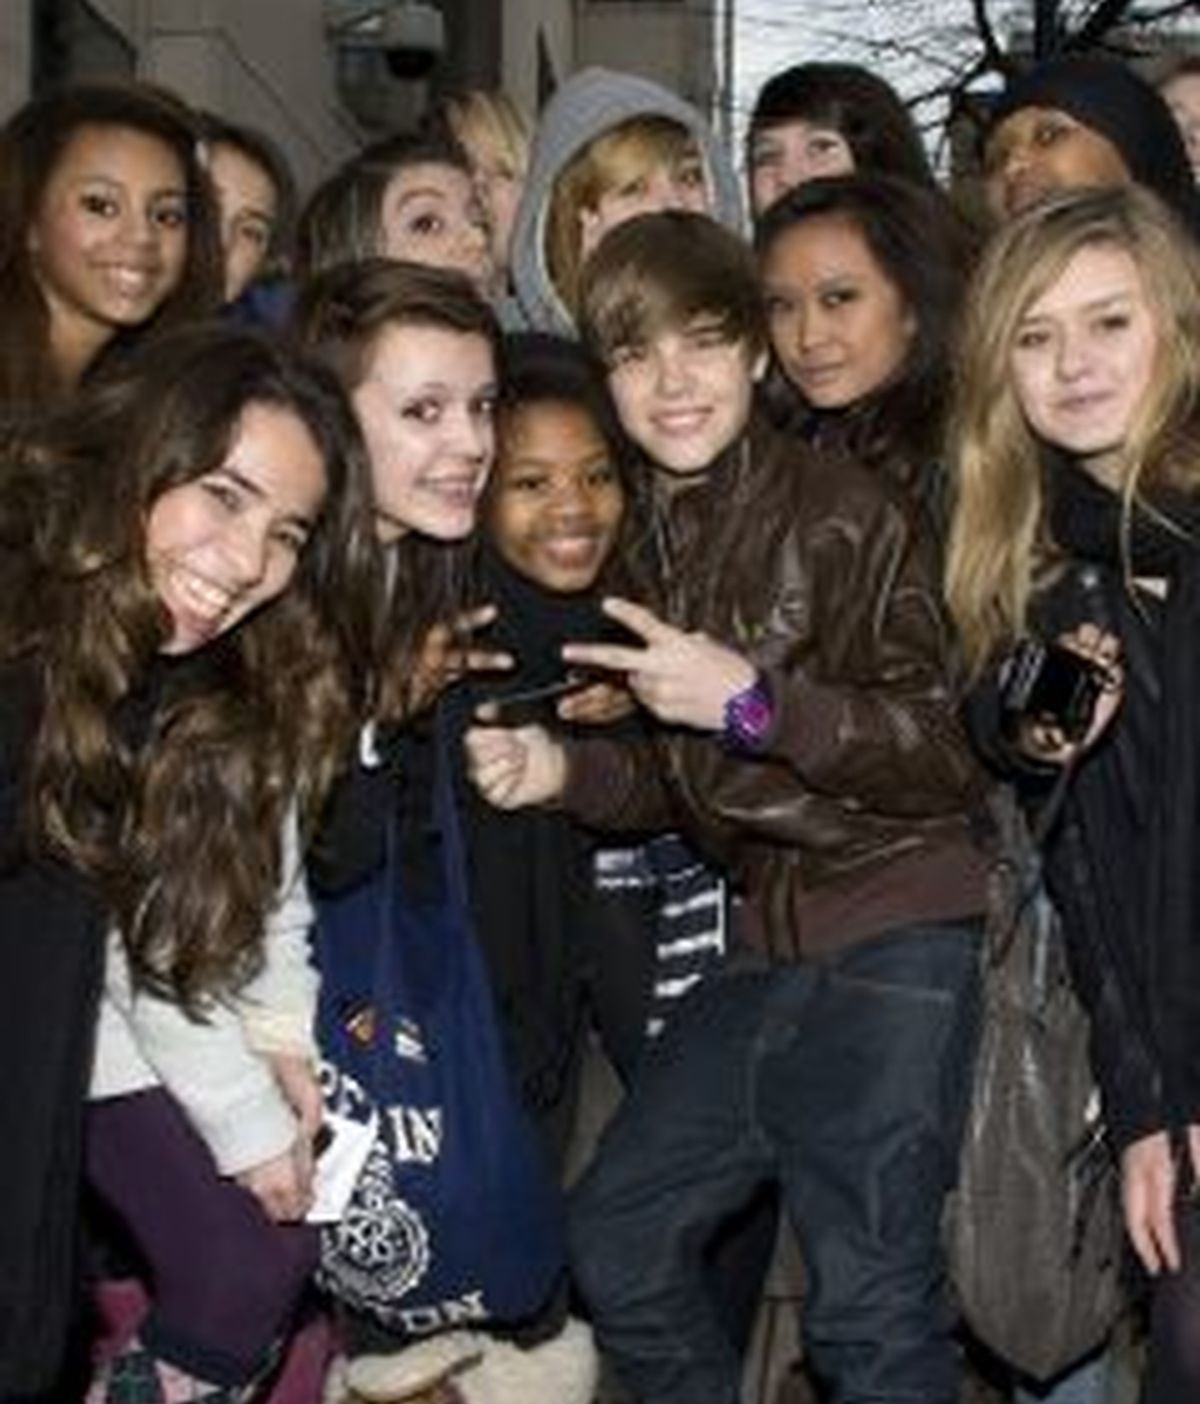 El cantante canadiense Justin Bieber es seguido por millones de fans adolescentes en todo el mundo .